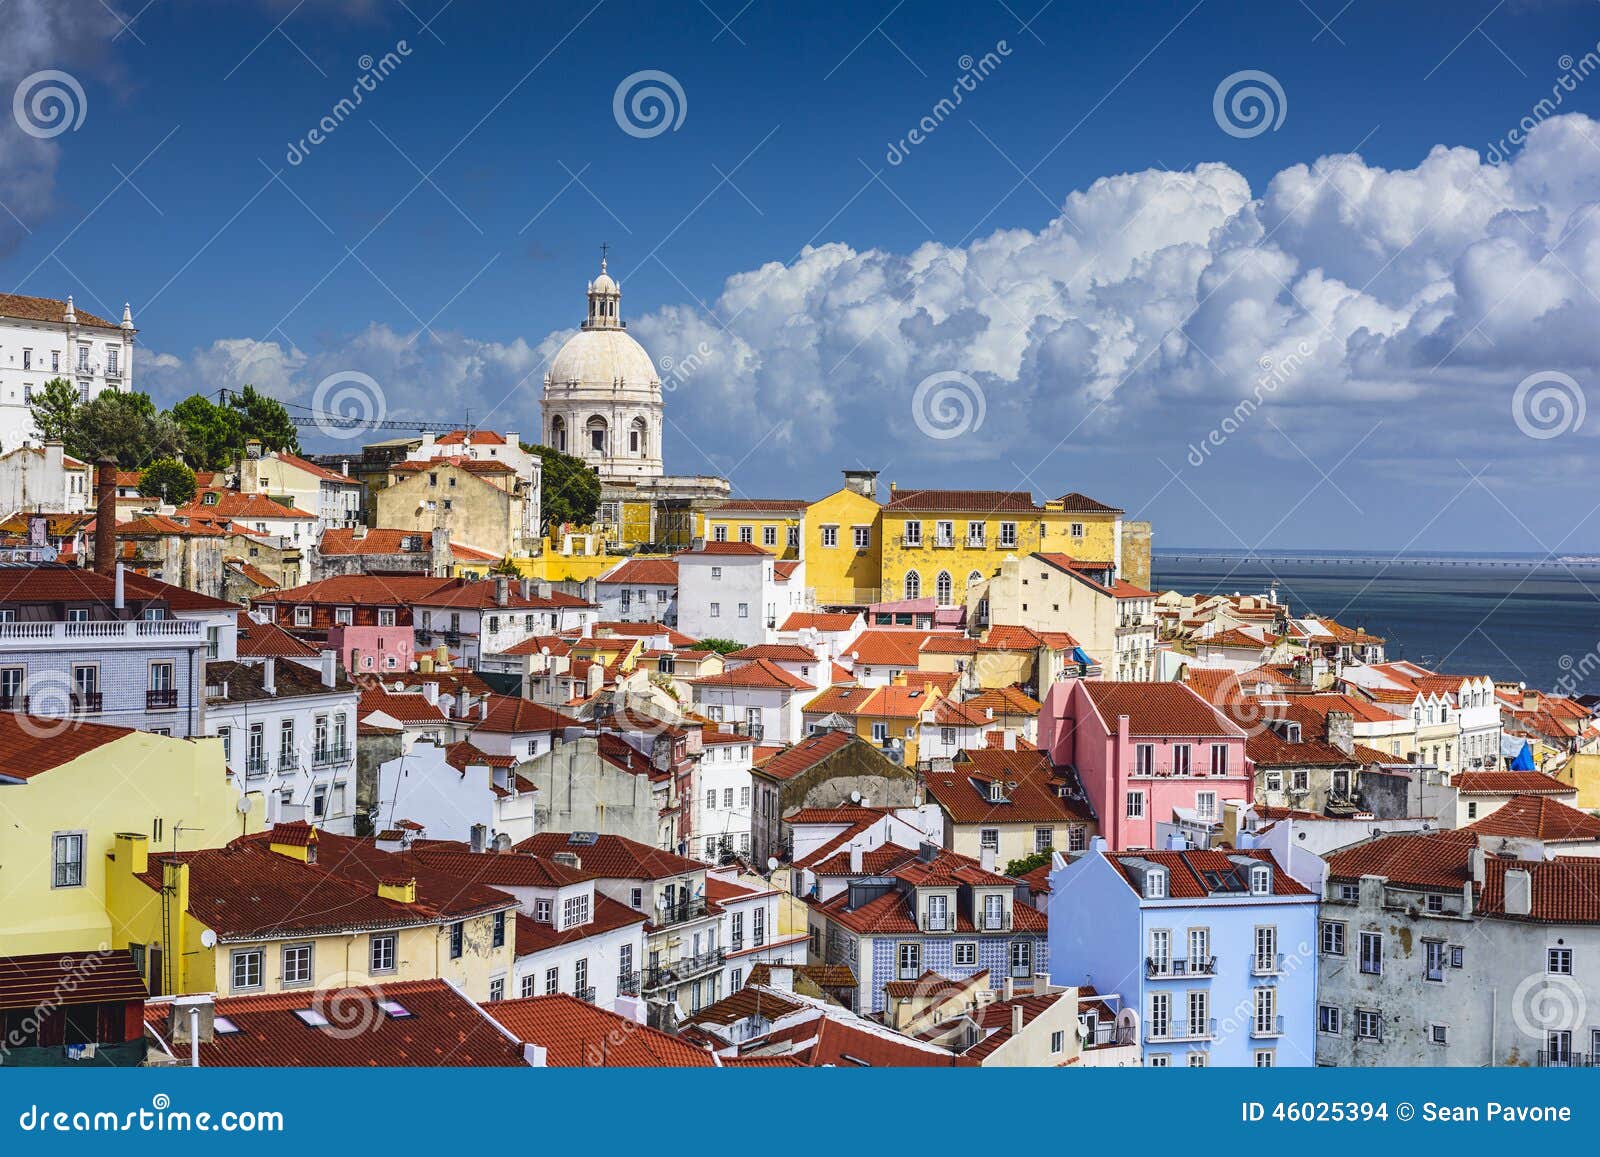 lisbon, portugal skyline at alfama